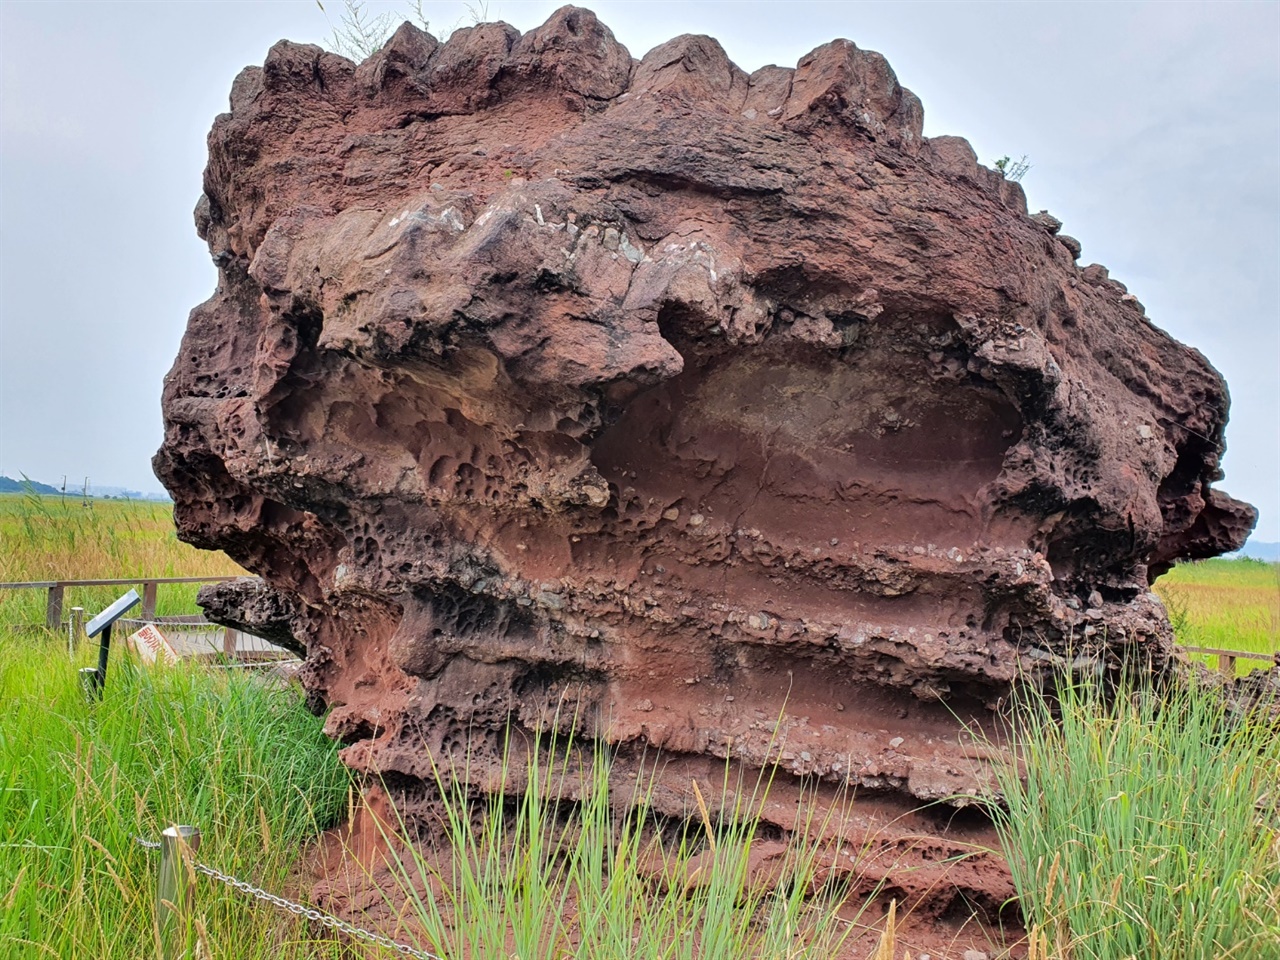 공룡알 화석산지에는 수많은 섬들이 육지가 되었고, 퇴적지층이 고스란히 드러나있다. 이 퇴적지층에서는 공룡알 화석들이 대거 남아있었다.